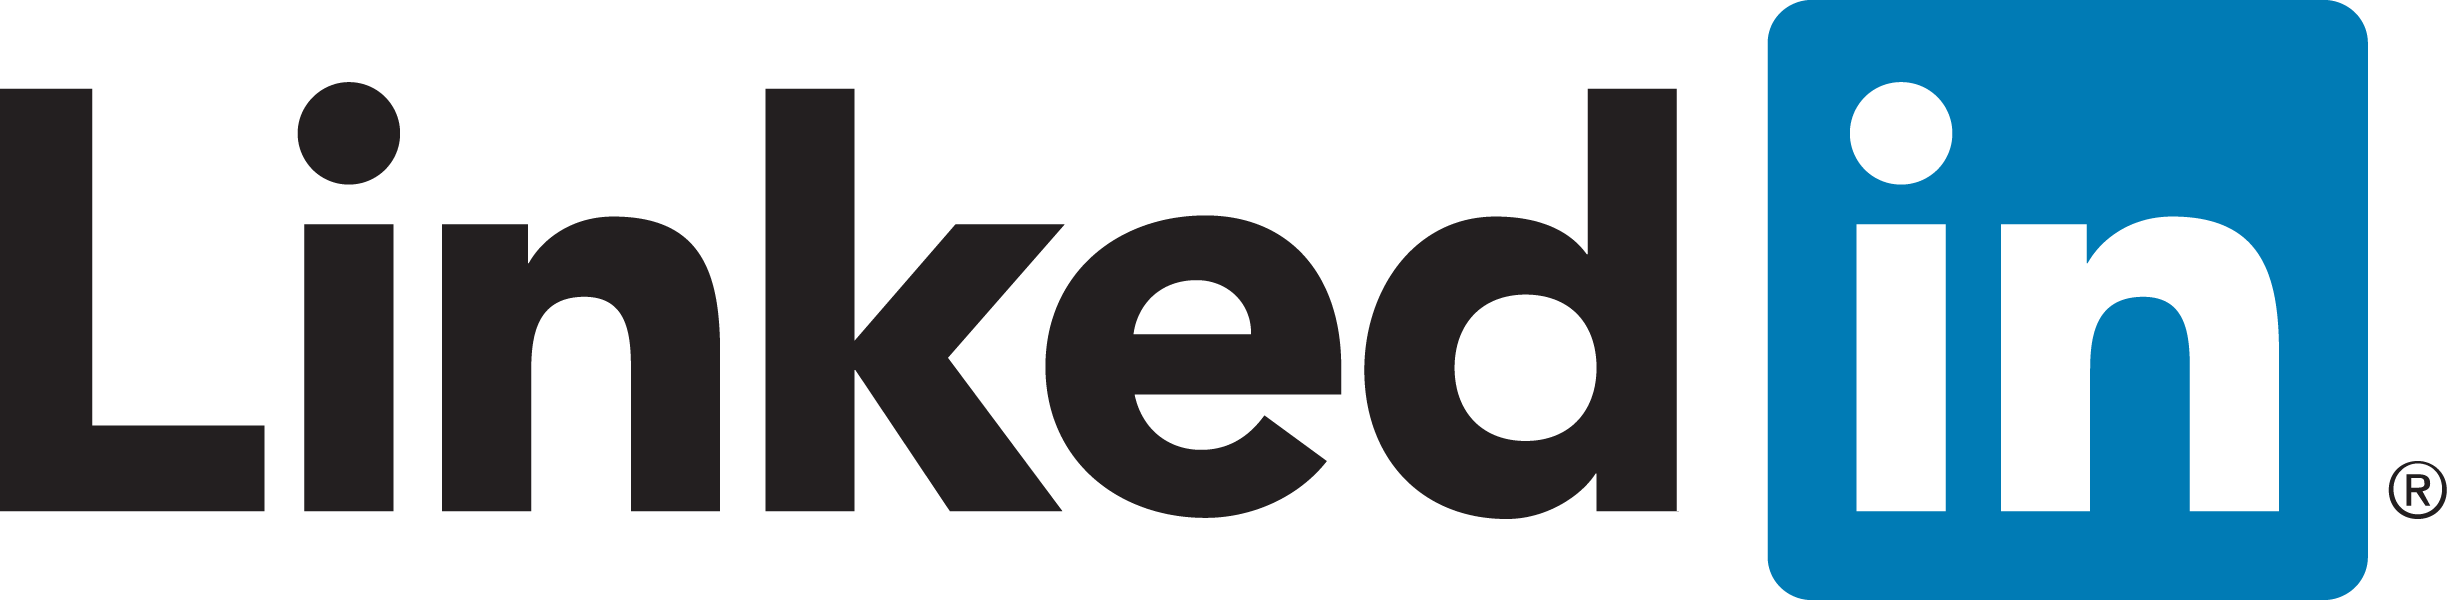 Linkedin R Full logo